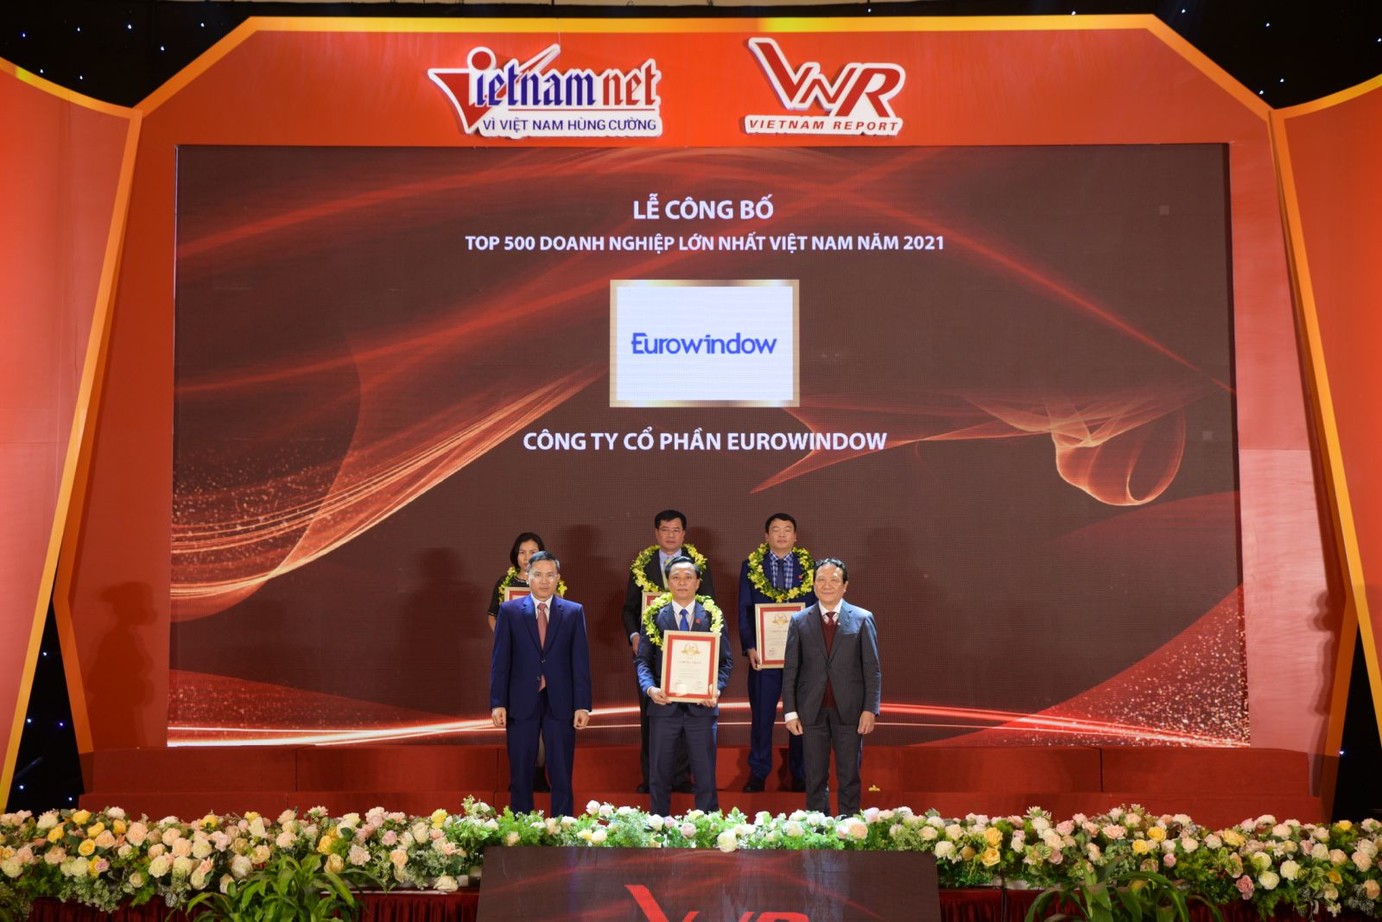 Eurowindow được vinh danh trong TOP 500 doanh nghiệp lớn nhất Việt Nam năm 2021